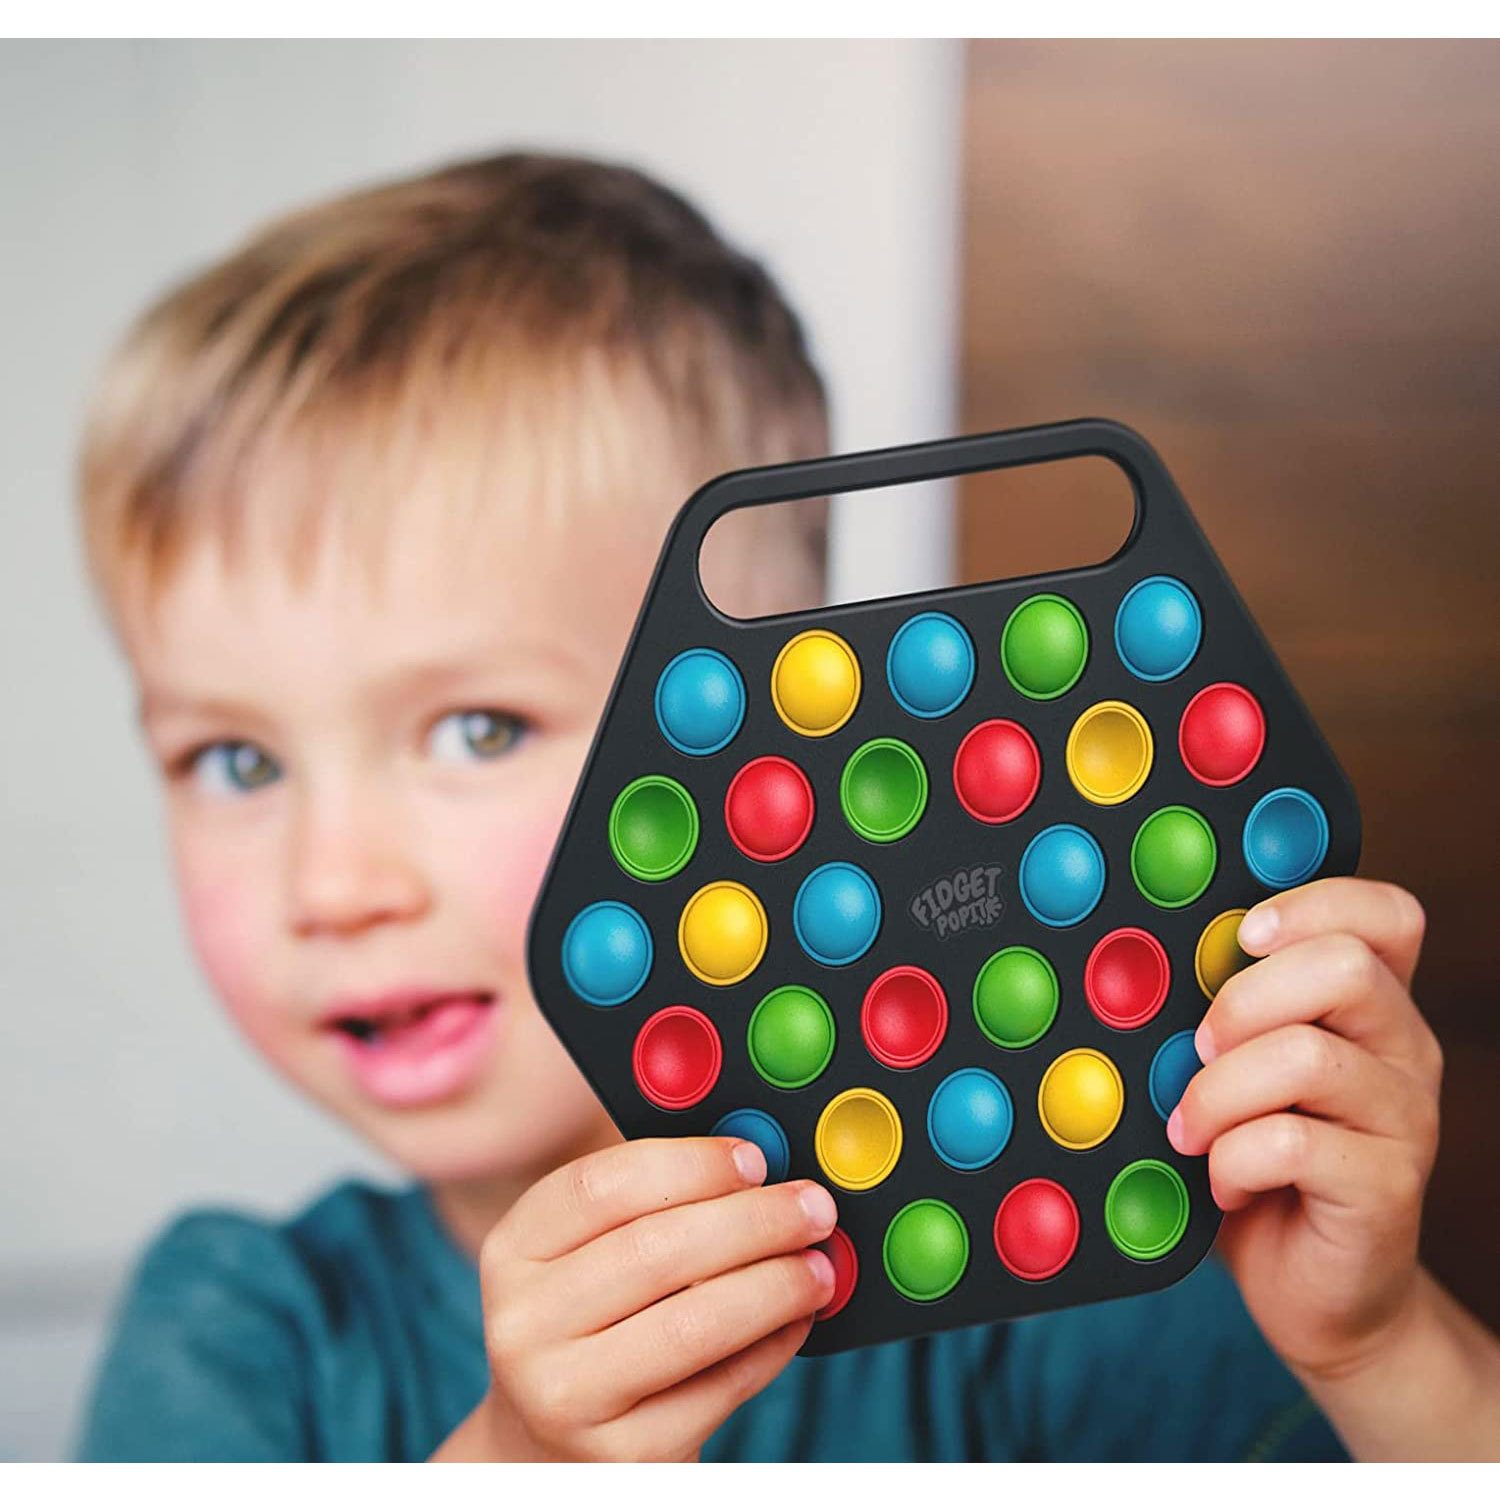 32 Colors Hard Shell Pop It Fidget Toy Board